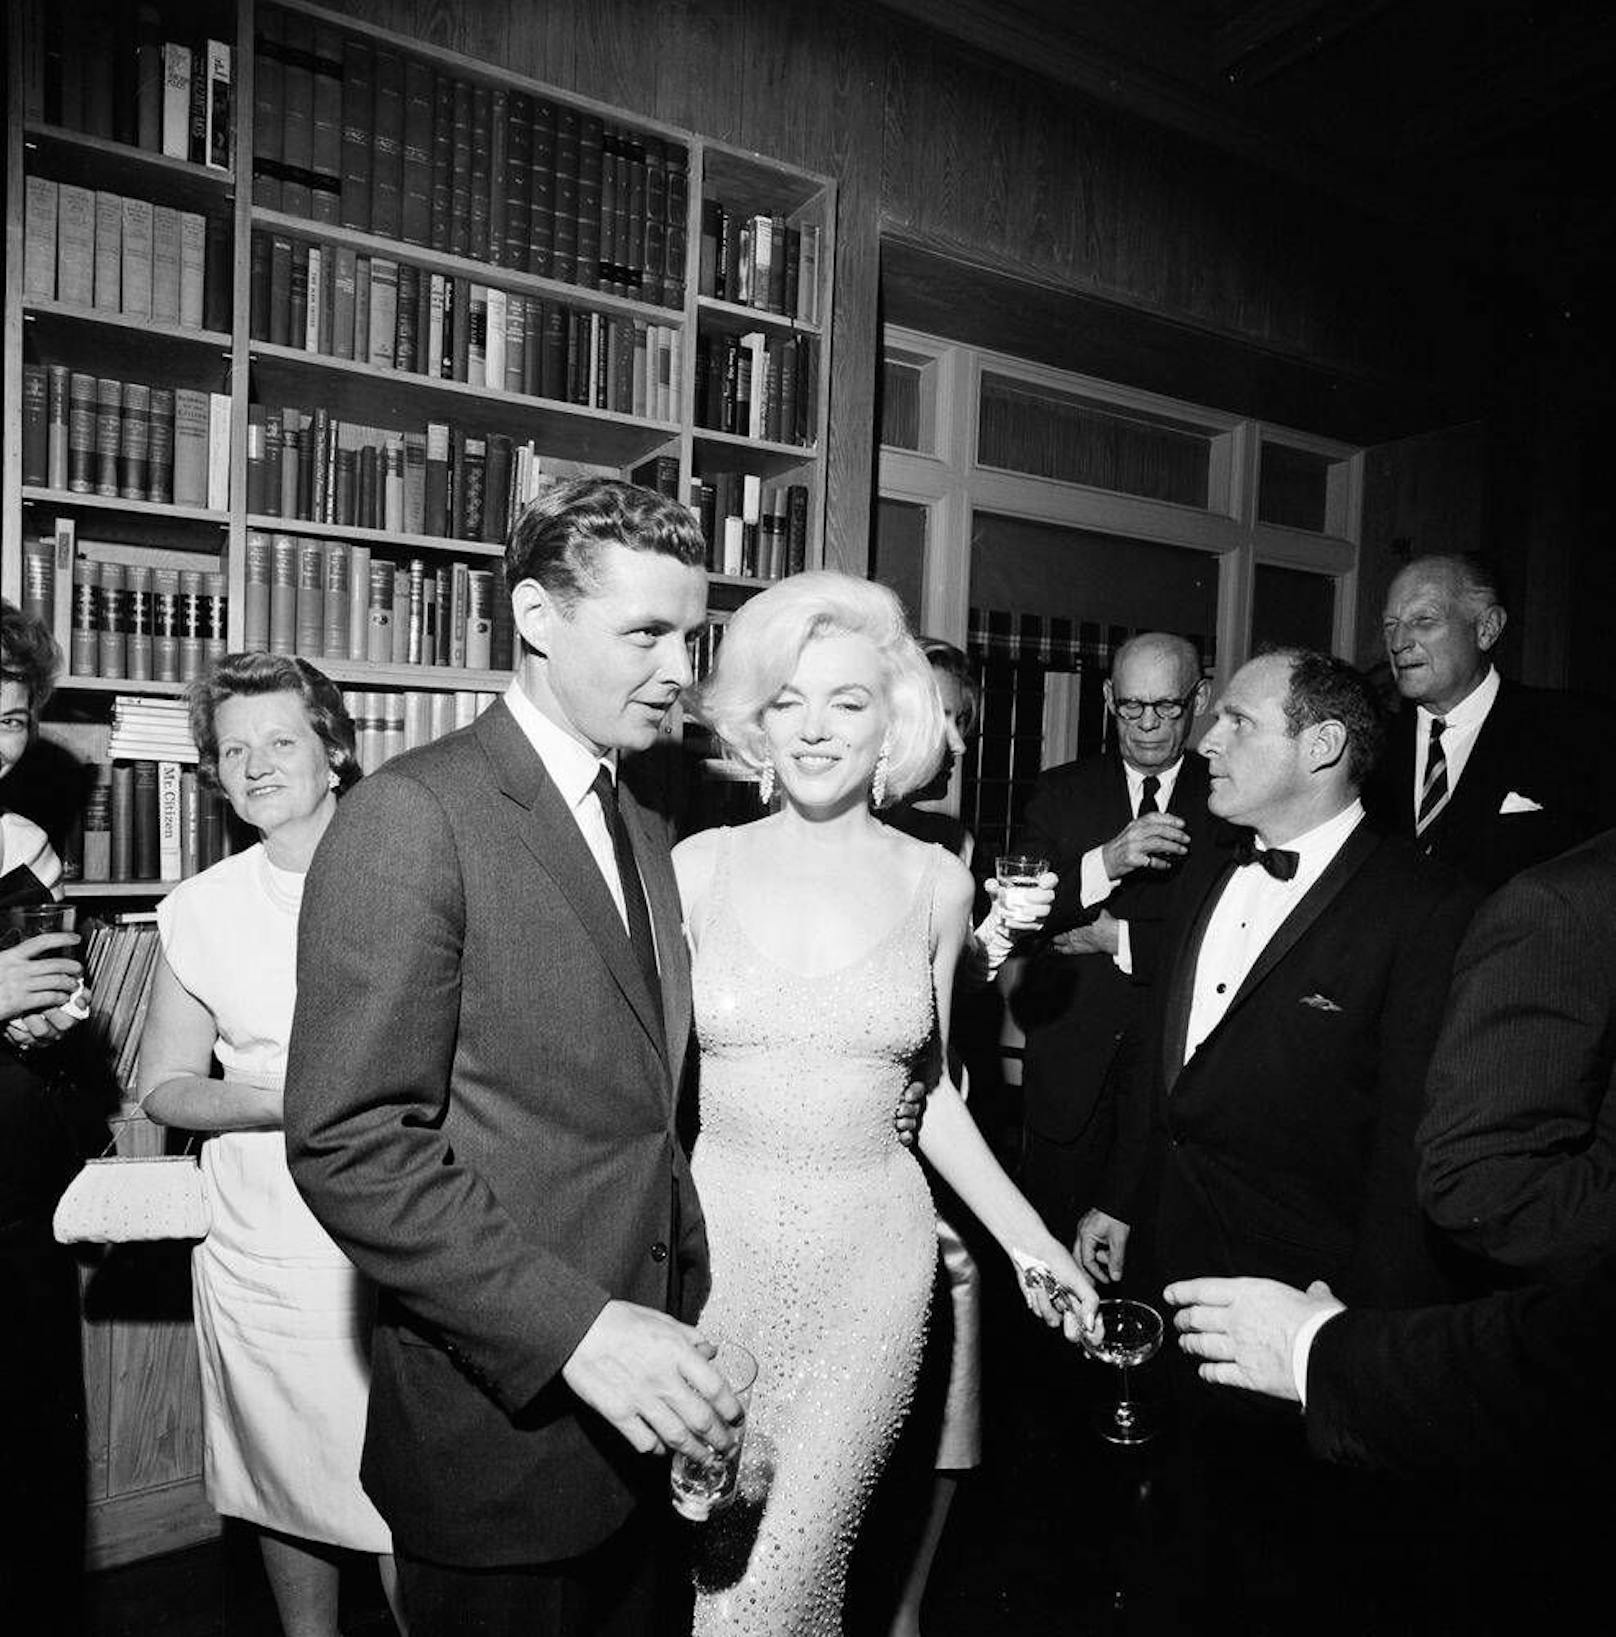 Marylin Monroe bei der Geburtstagsfeier für John F. Kennedy. Der letzte große Auftritt vor ihrem Tod 1962. Gerade deswegen ist dieses Kleid auch zu einer Ikone der Popkultur geworden.